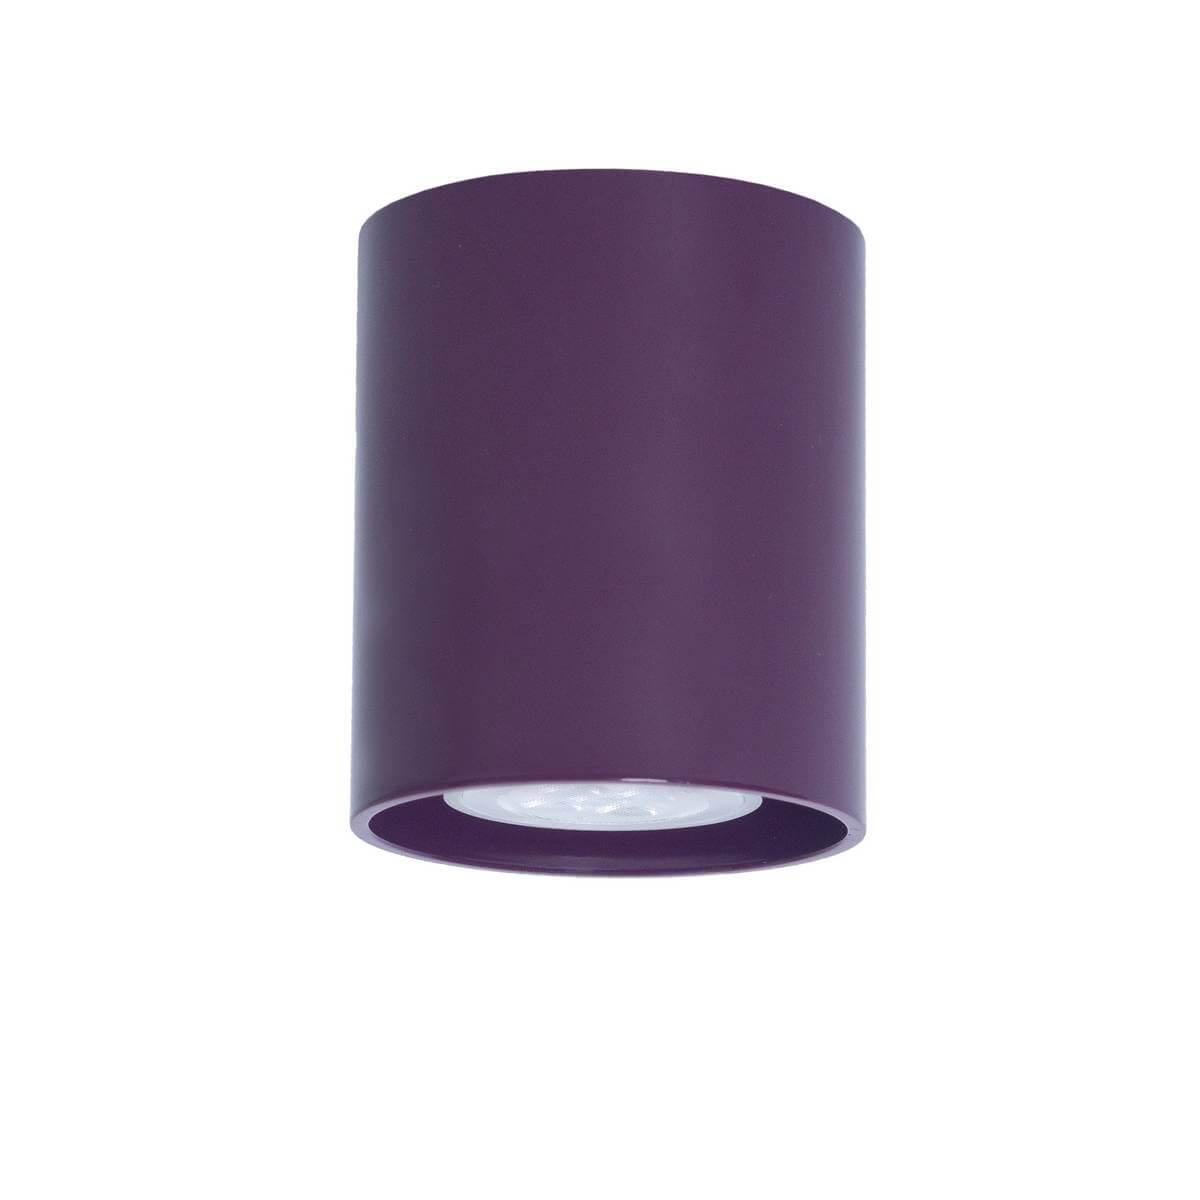 Потолочный светильник TopDecor Tubo8 P1 23 светильник настольный на прищепке e27 абажур фиолетовый spe17156 07 333930